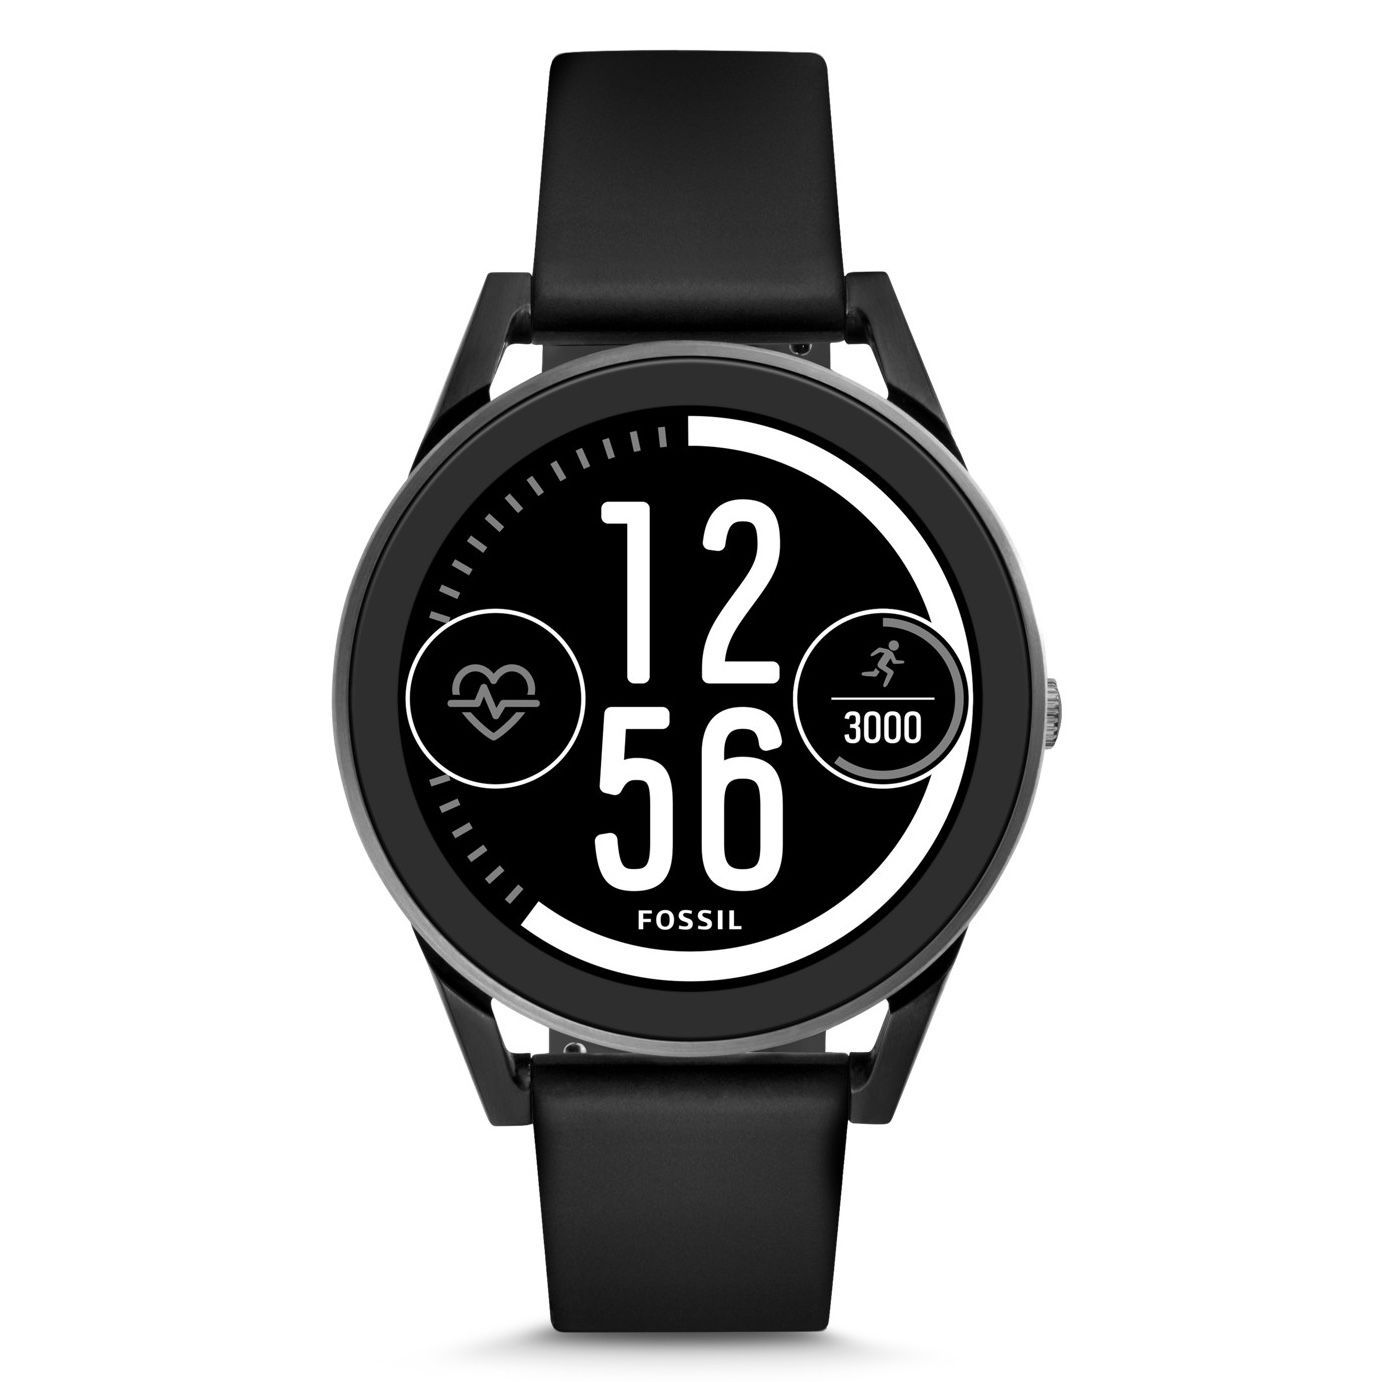 Fossil Gen 3 Android Wear Sport Smartwatch